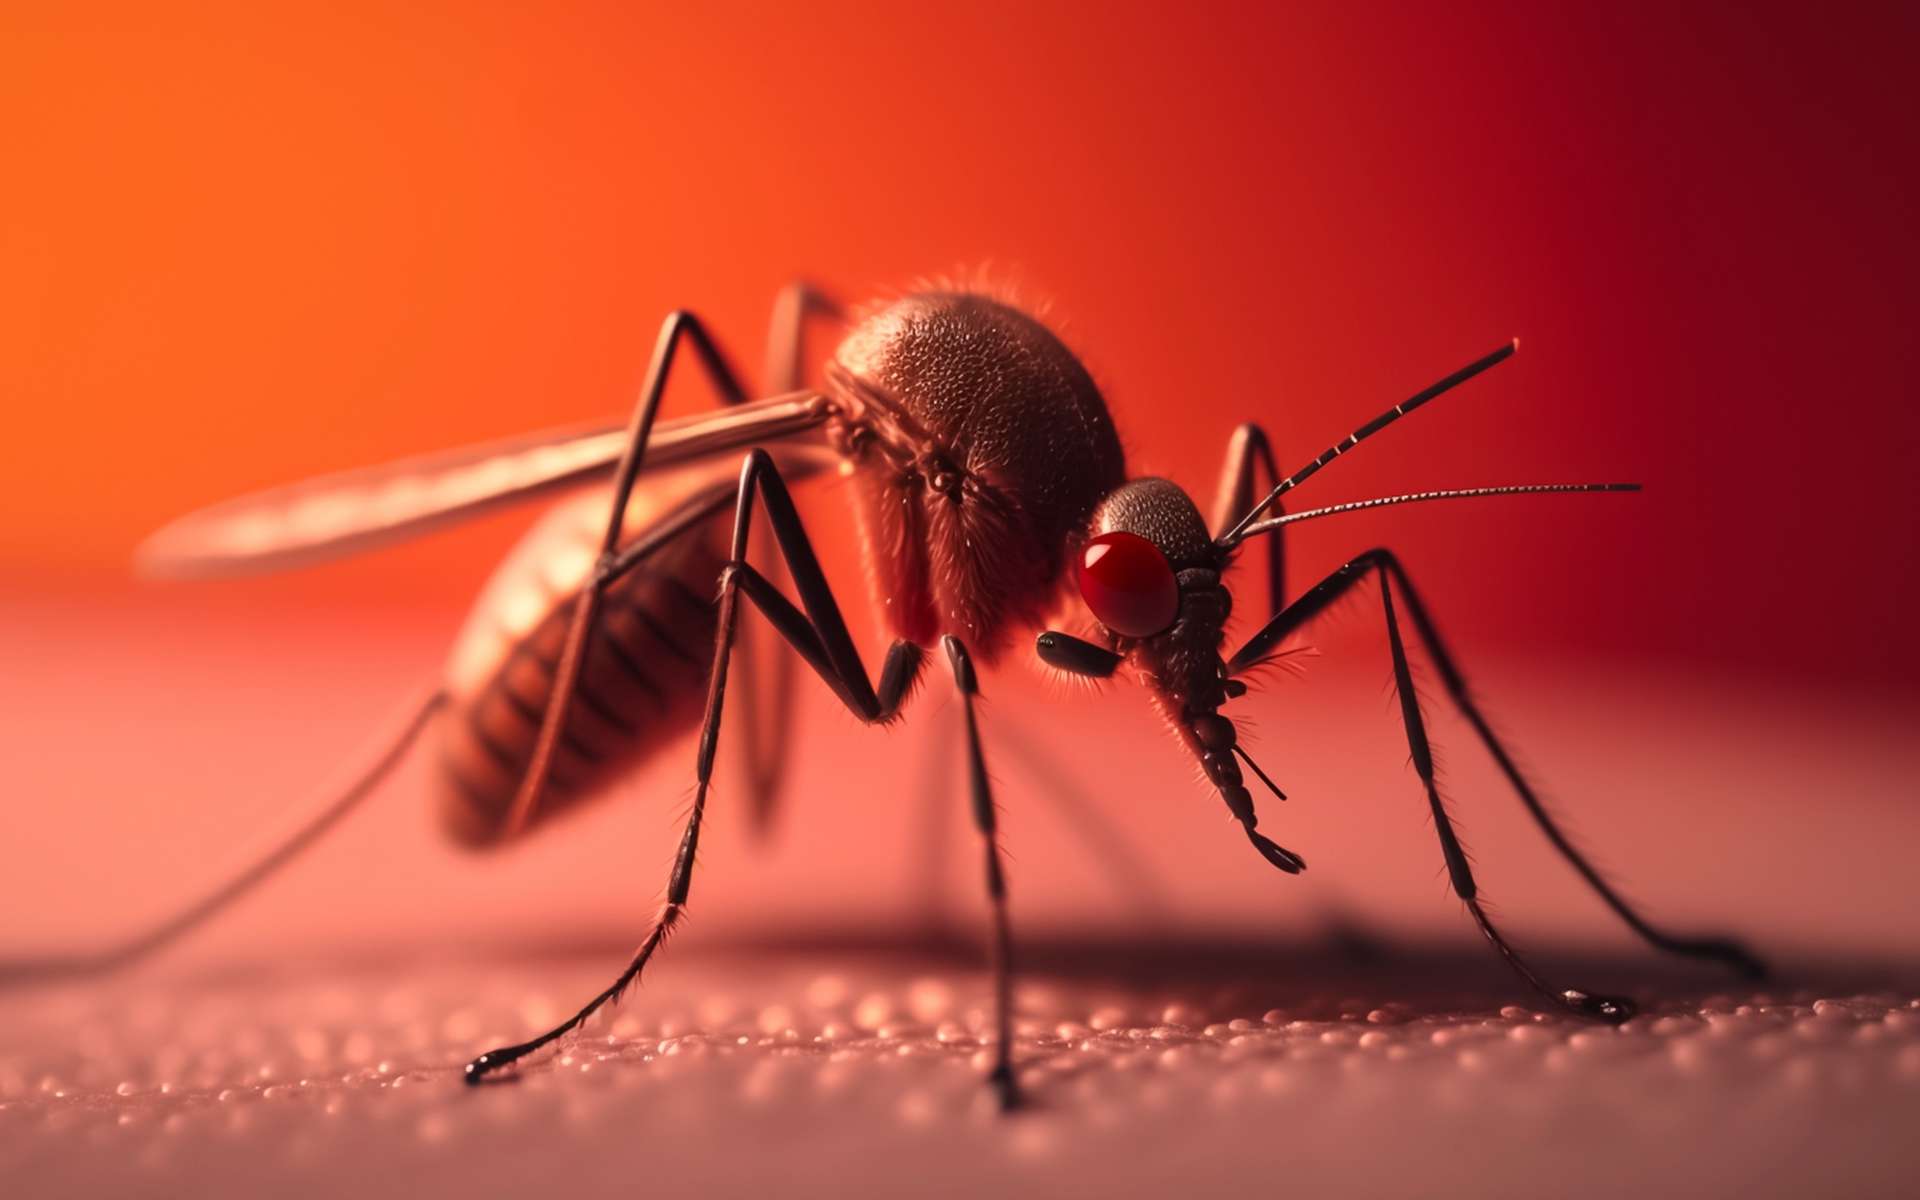 Les moustiques piquent désormais toute l'année à cause de ce problème